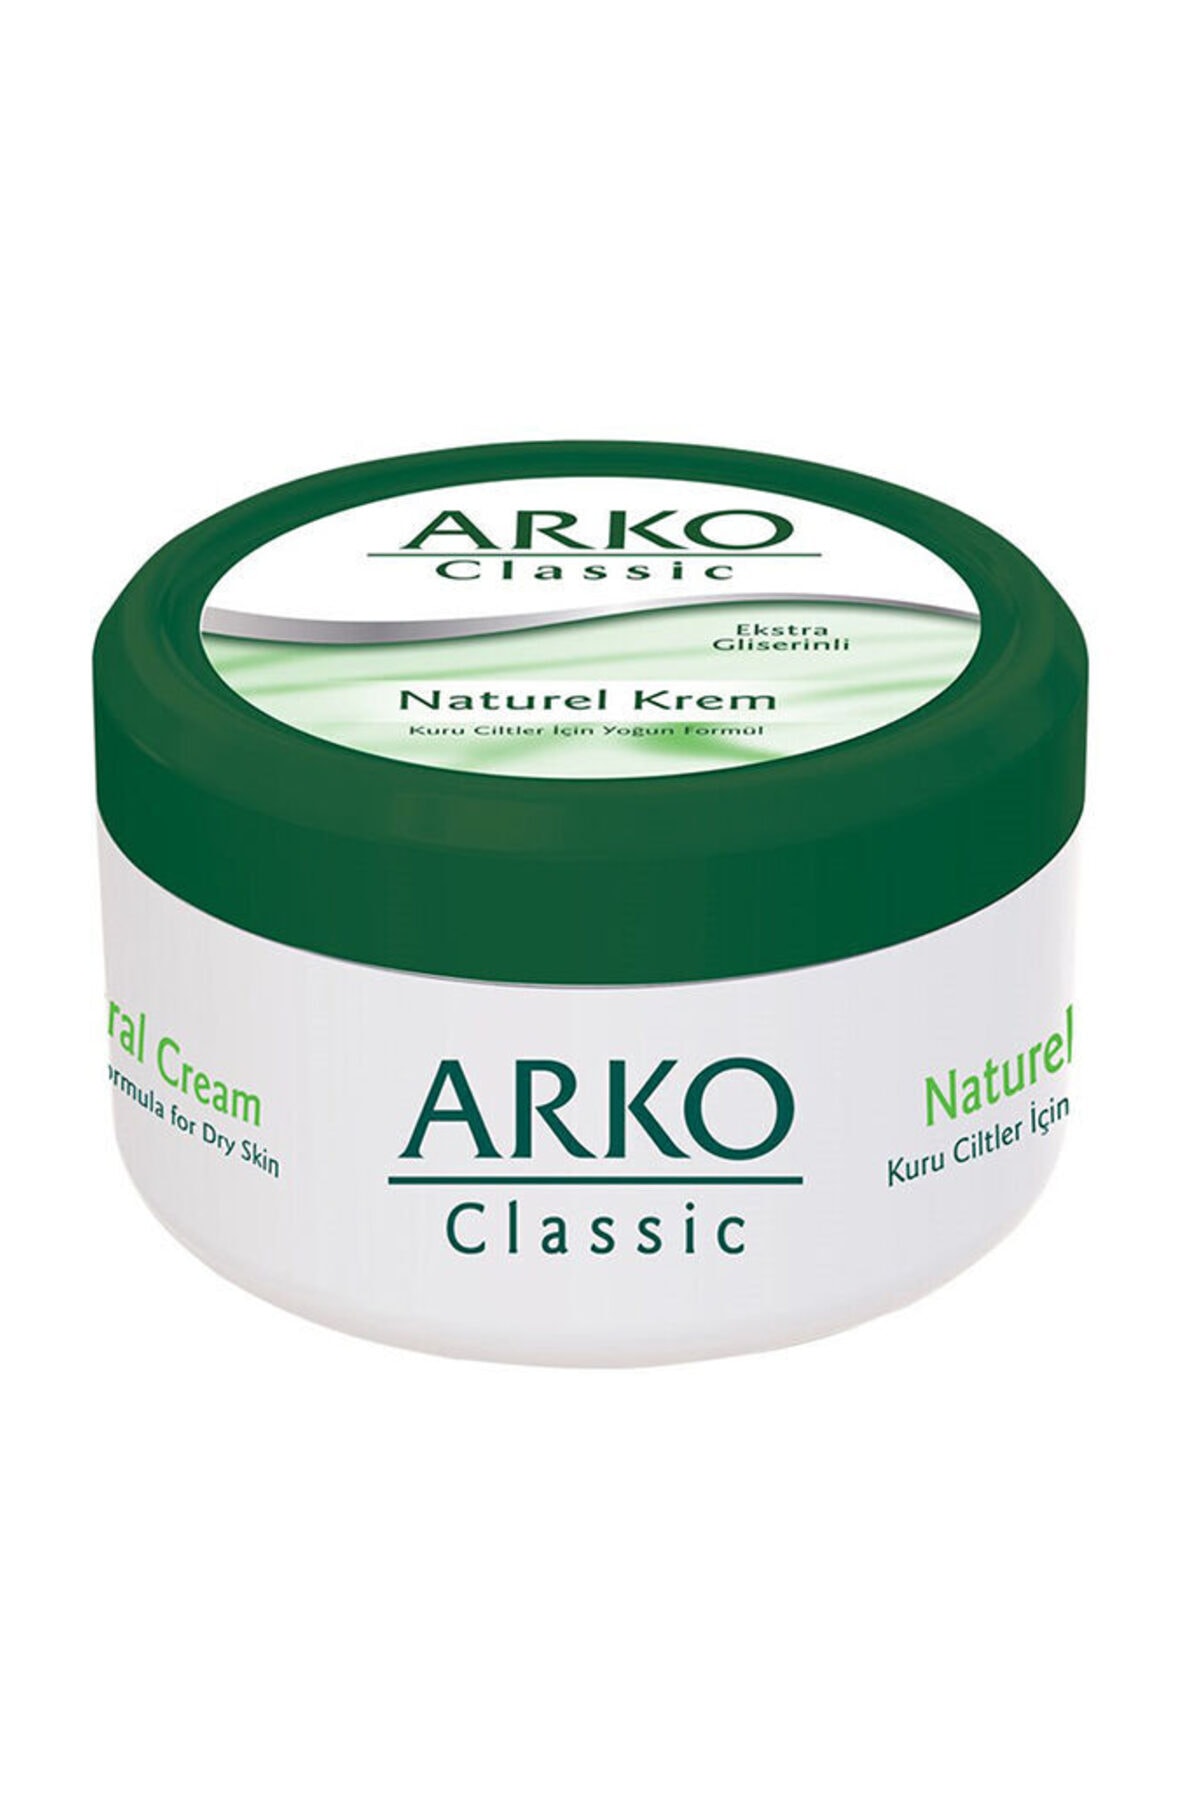 Arko Natural Krem Klasik Bakım 150 ml Fiyatı, Yorumları - Trendyol